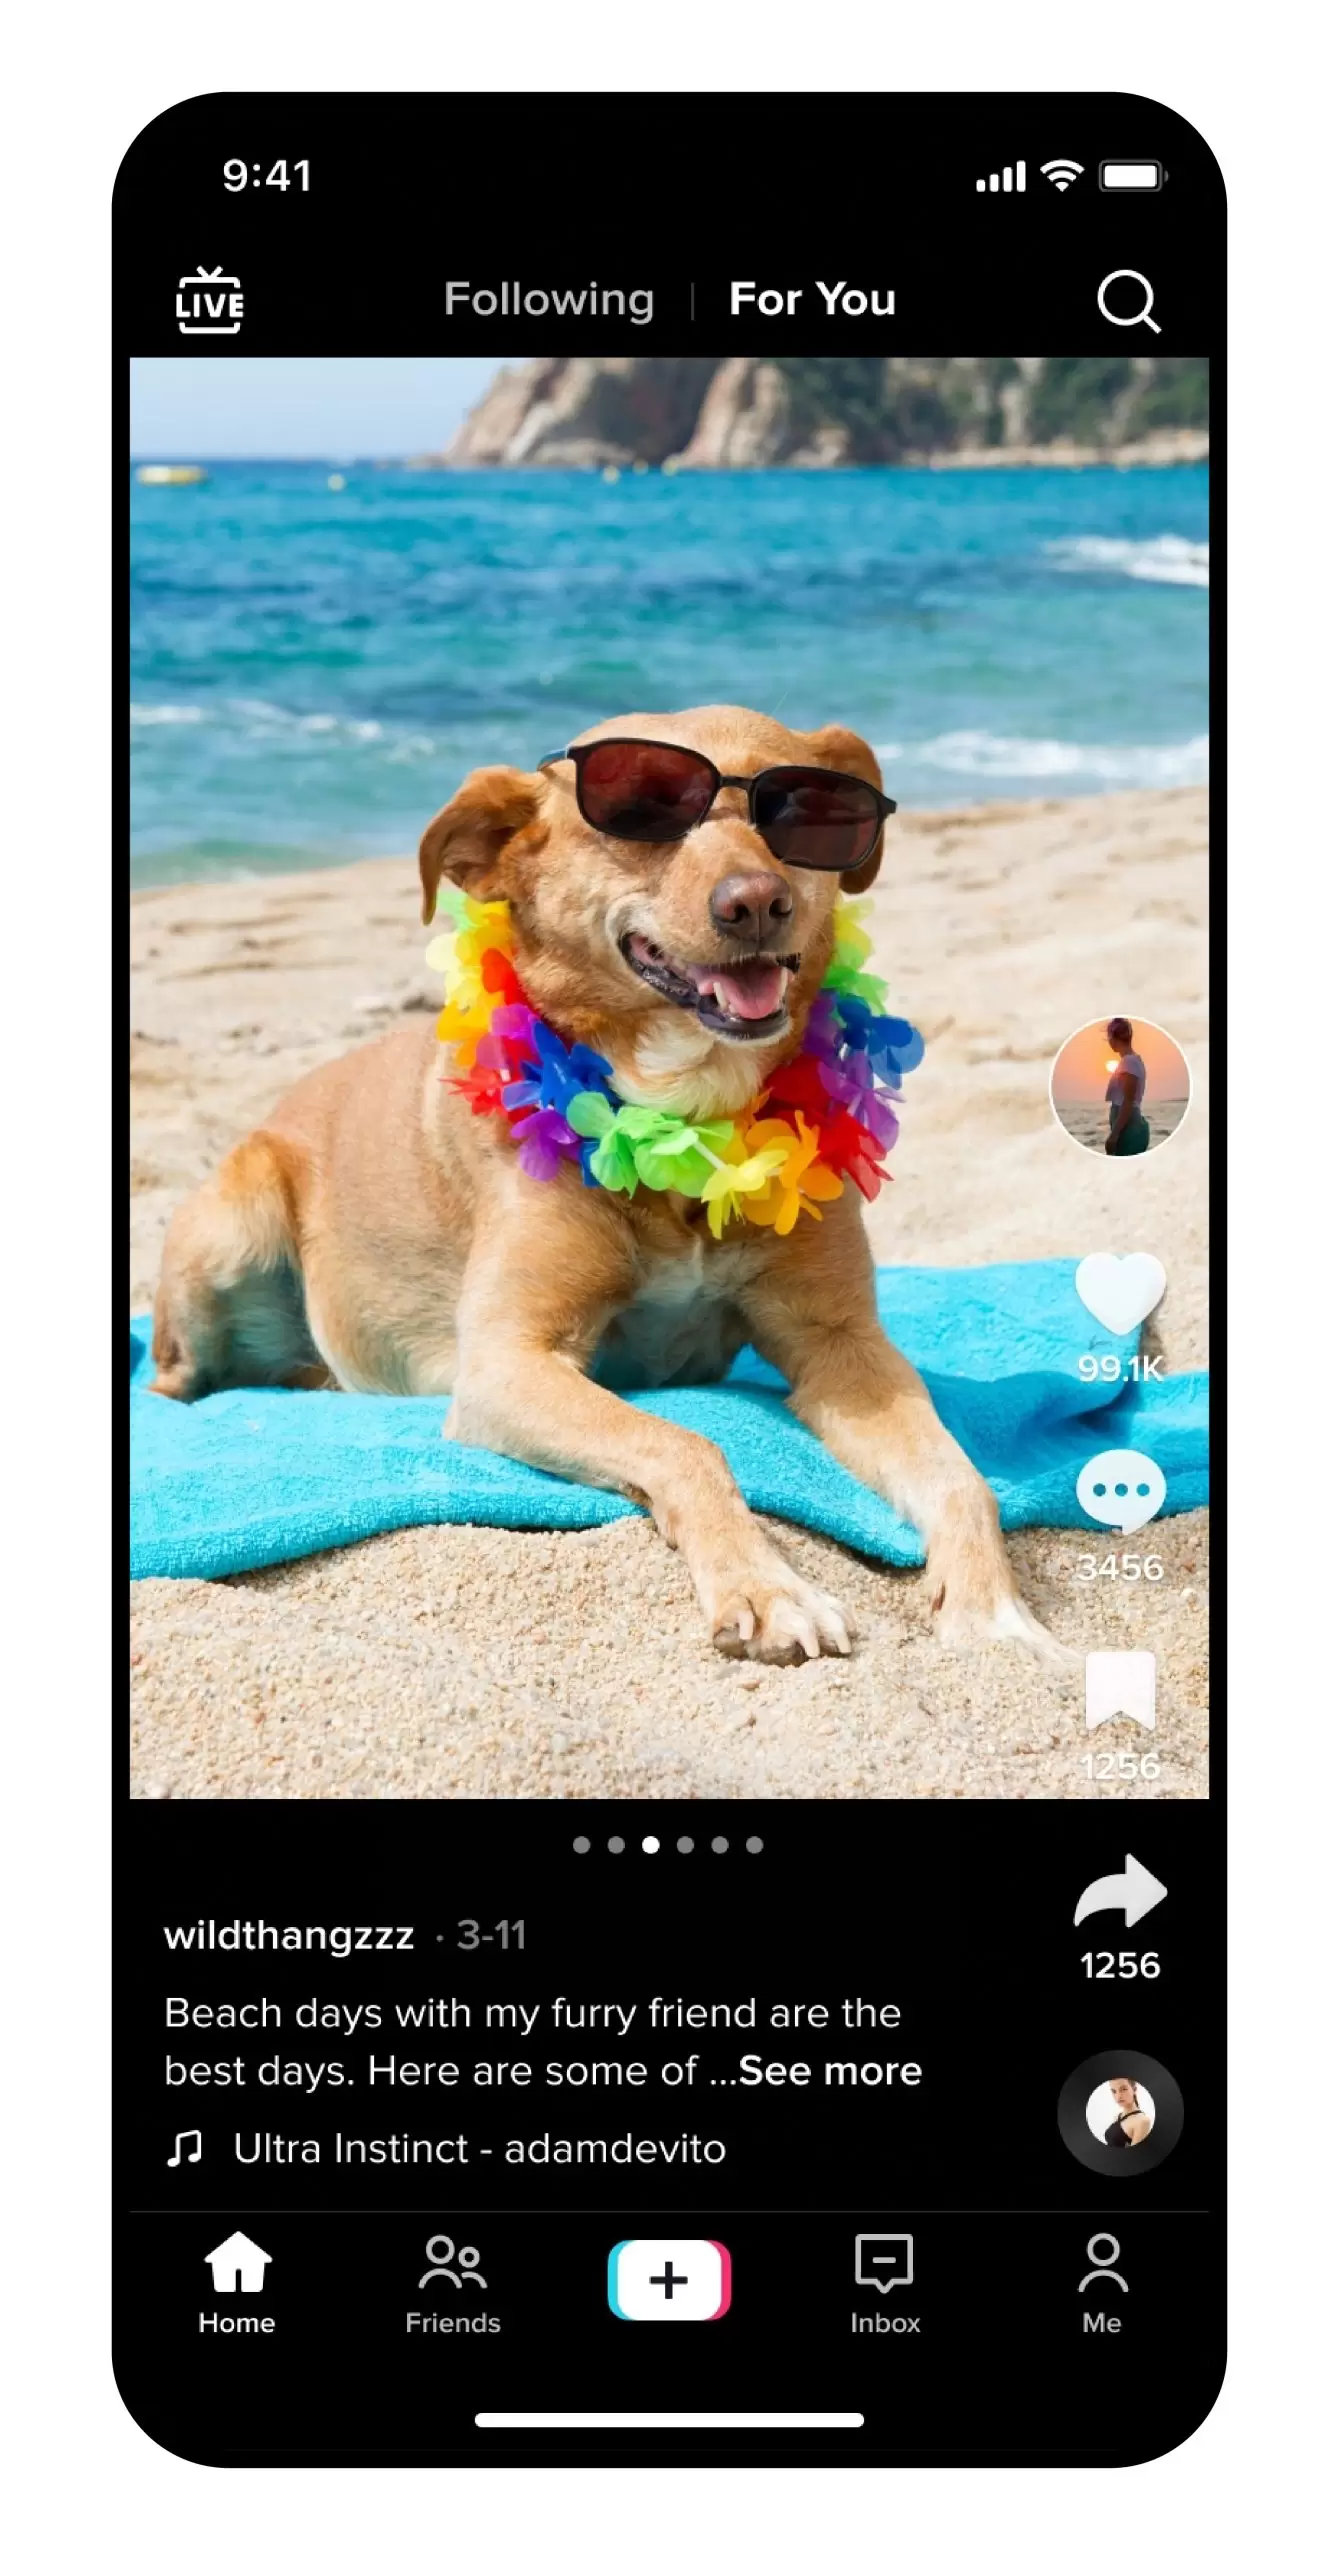 TikTok, yeni fotoğraf düzenleme özelliğini duyurdu